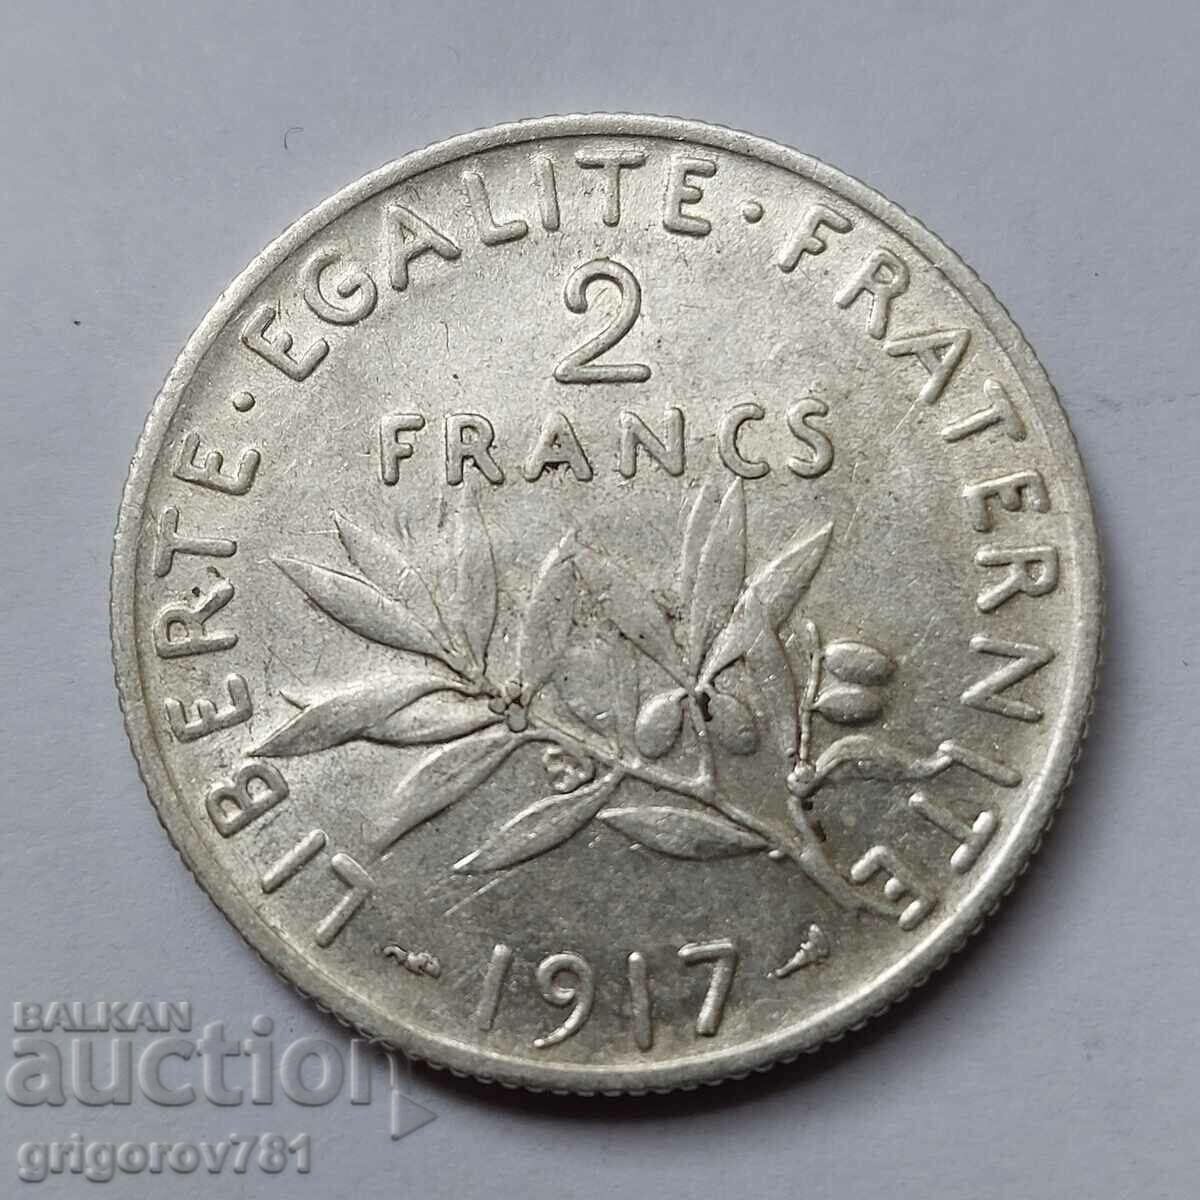 2 Franci Argint Franta 1917 - Moneda de argint #100